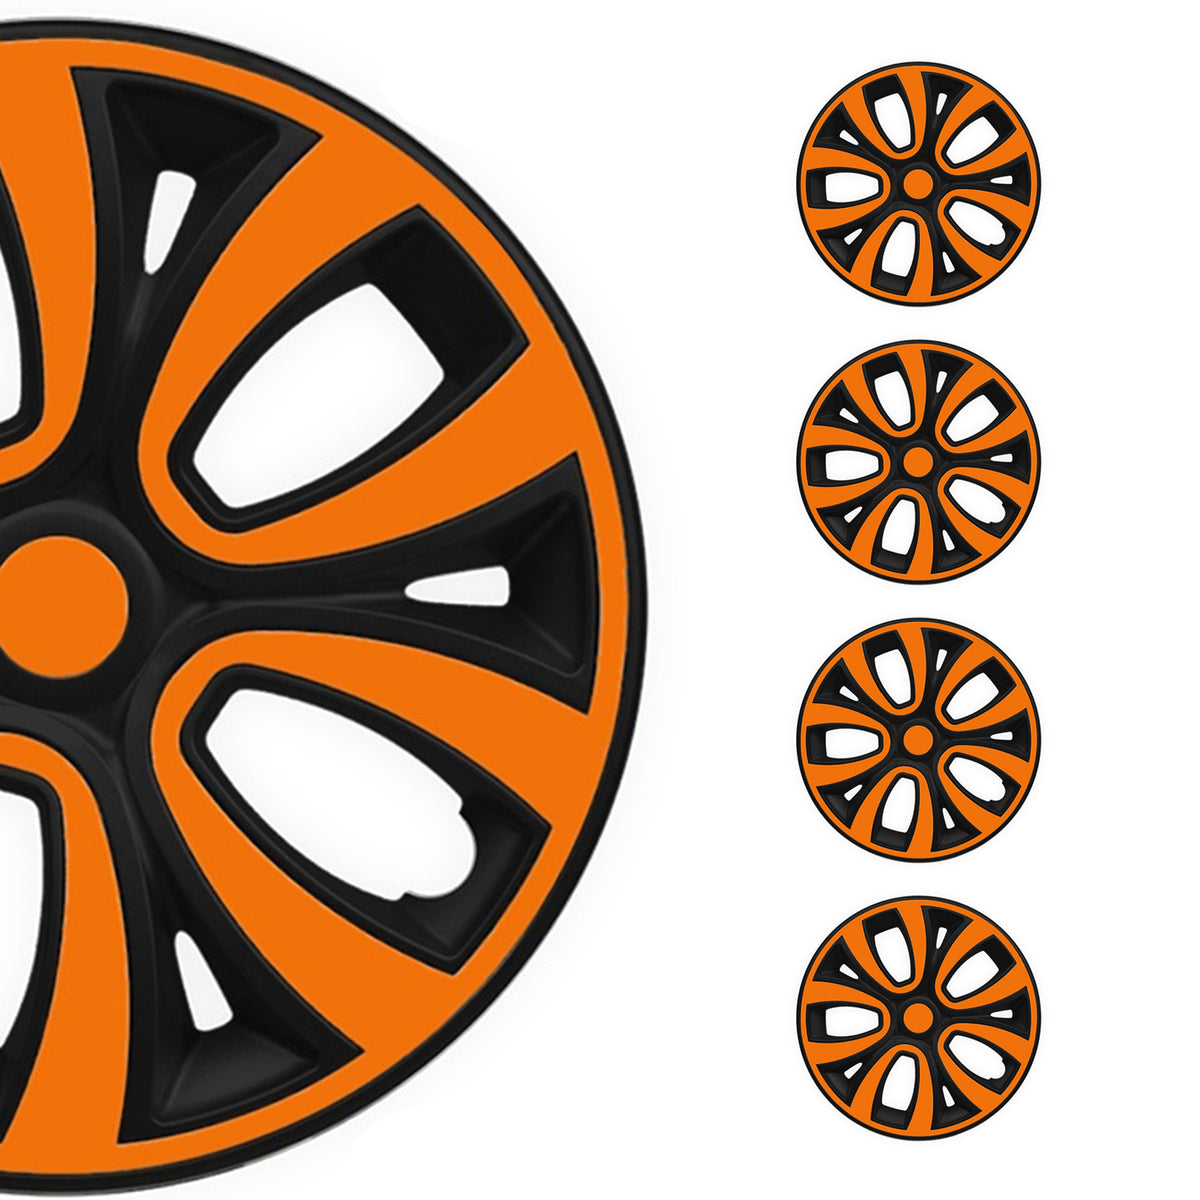 4x Radzierblende Radkappen für 14" Zoll Stahlfelgen Orange Matt Schwarz